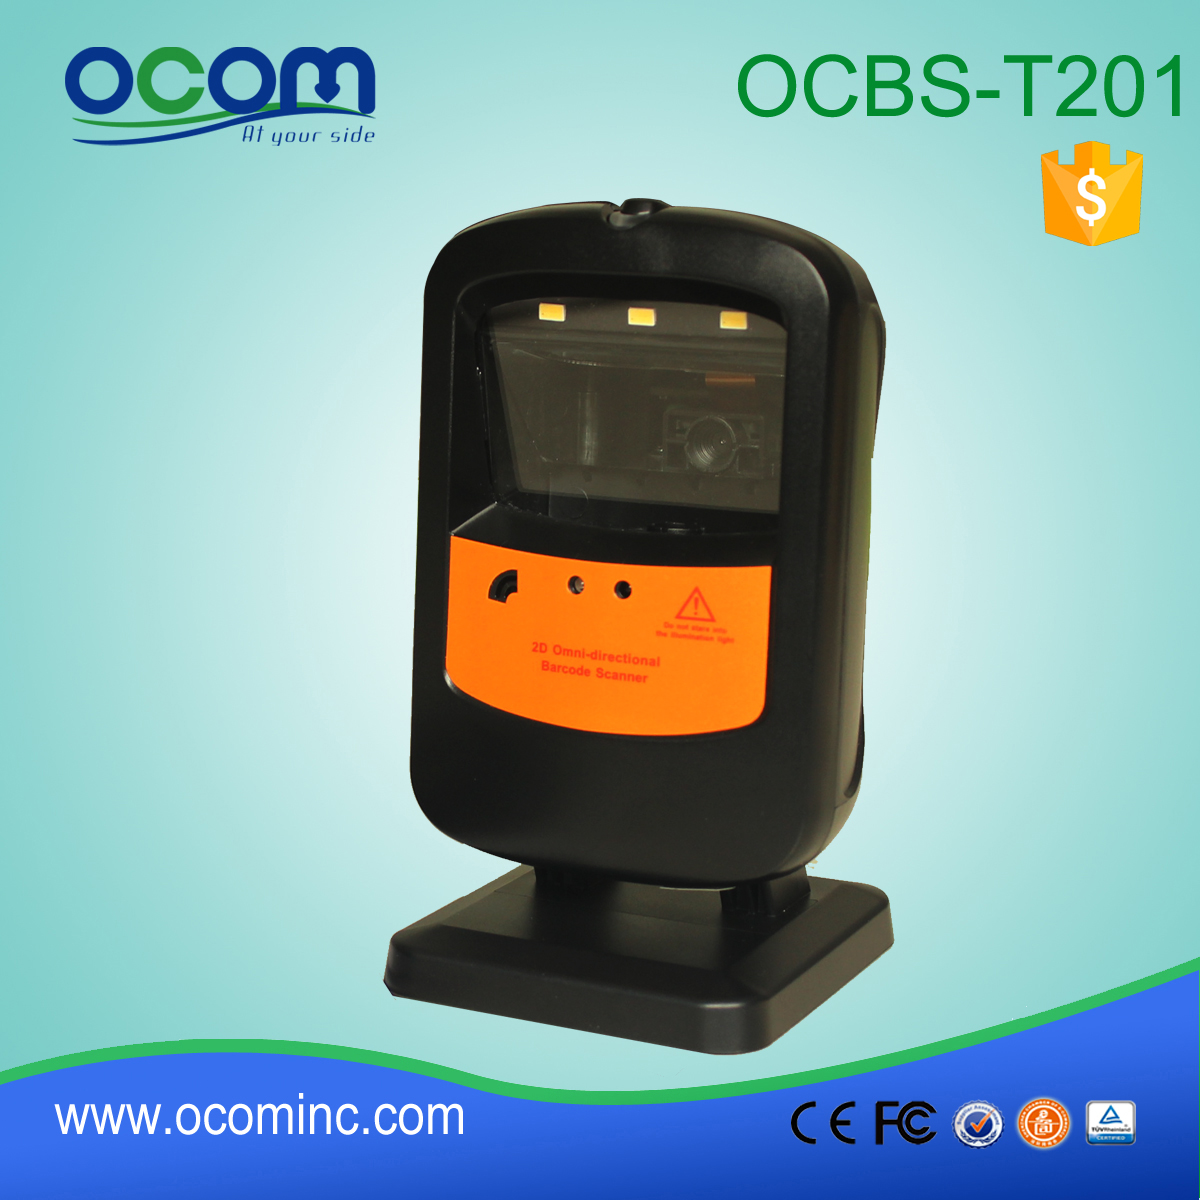 OCBs-T201: Μη κατευθυντική μηχανή σαρωτή γραμμωτού κώδικα, barcode scanner τμήματα